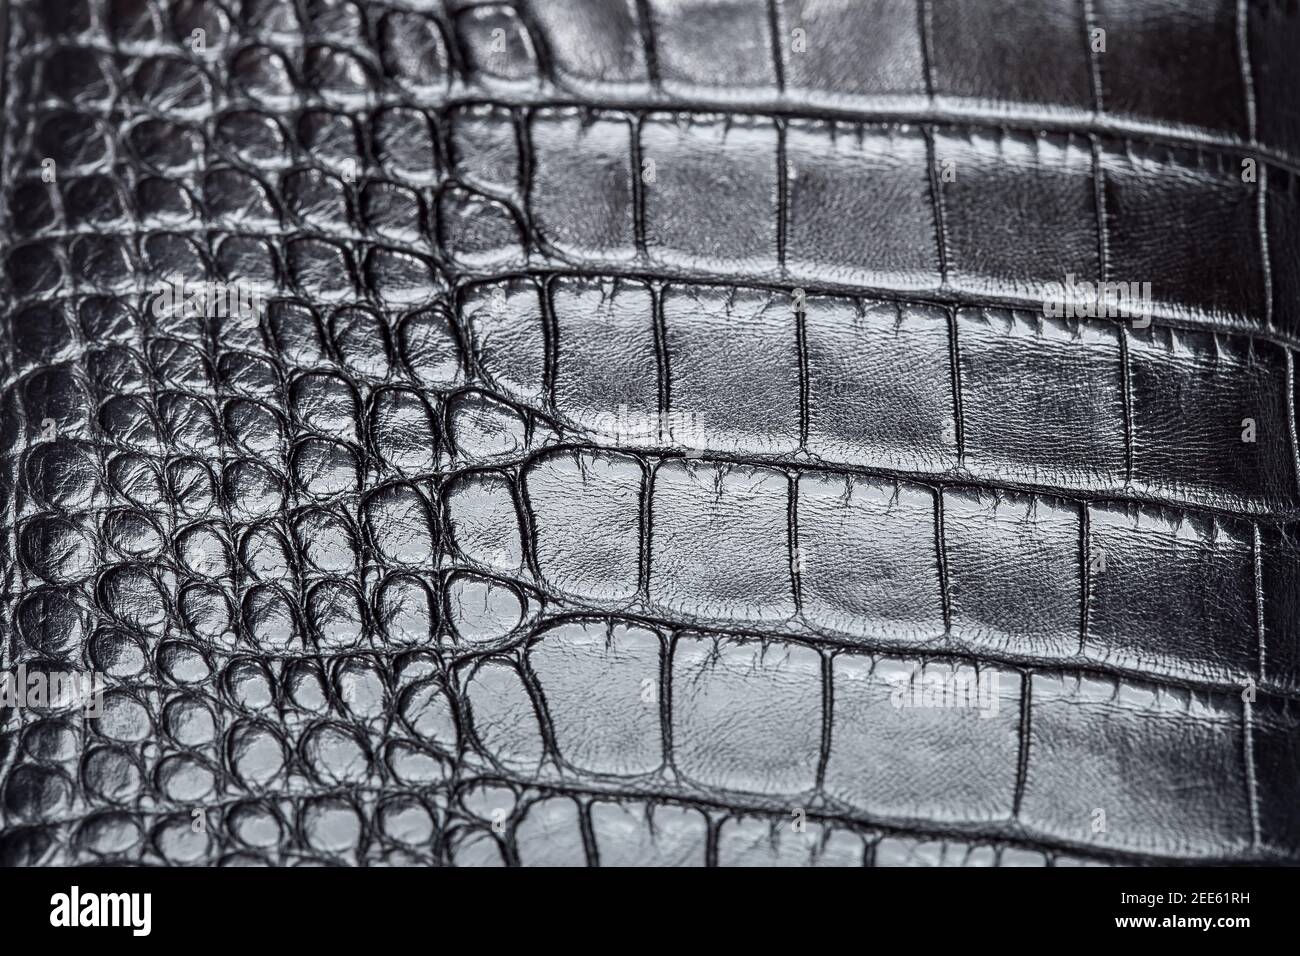 Black Crocodile Leather Texture